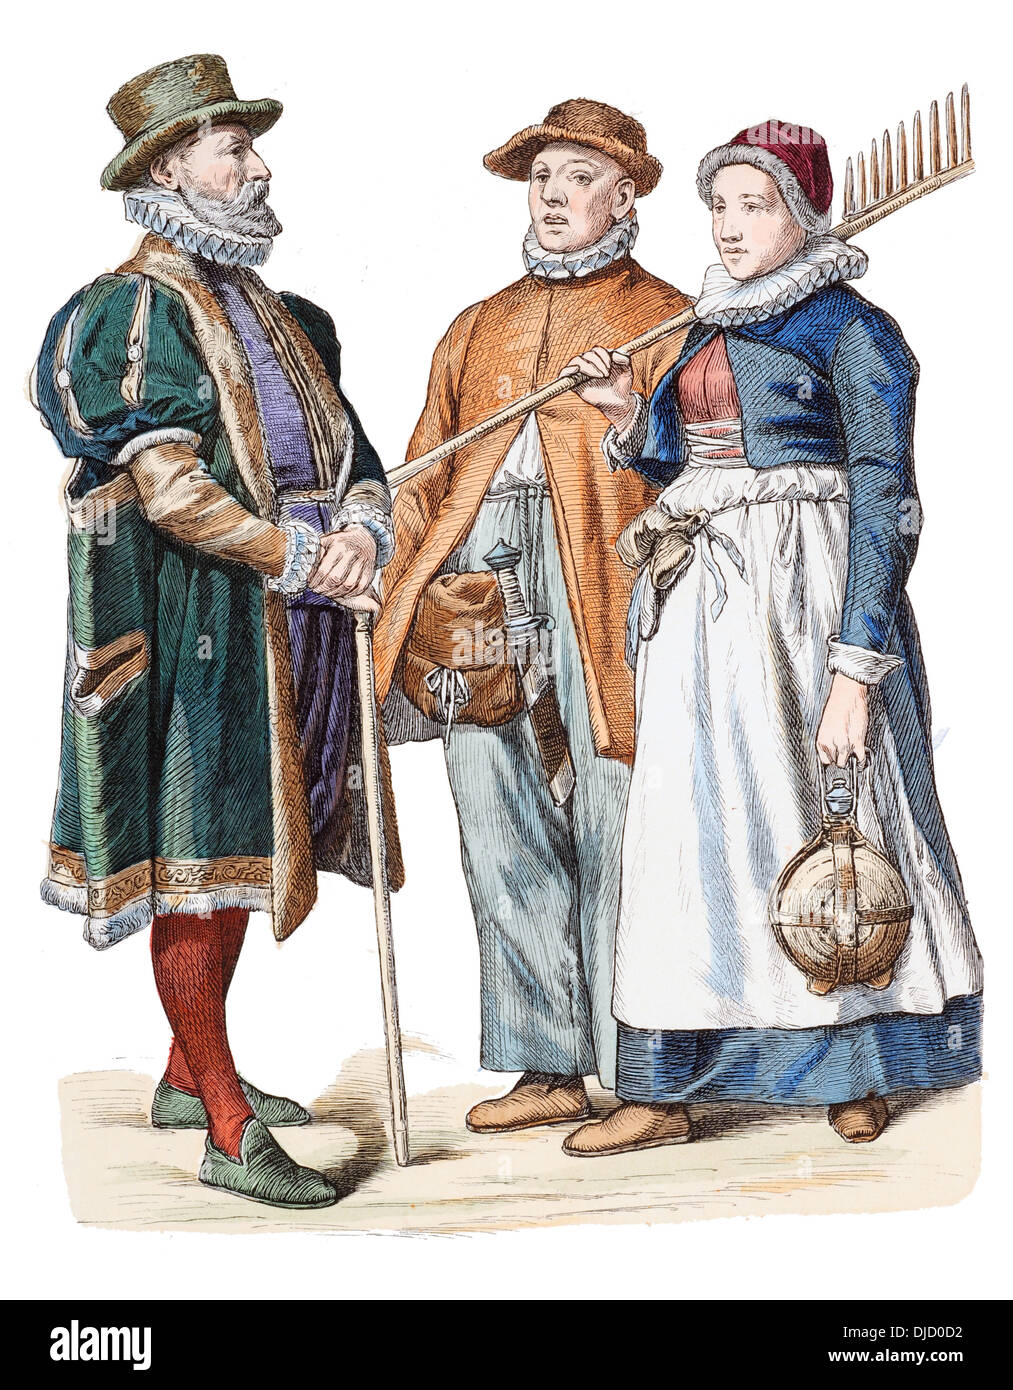 Fin du 16e siècle XVI 1500 Costumes allemand (de gauche à droite) Marchand de Rostock et les paysans de Rostock Banque D'Images